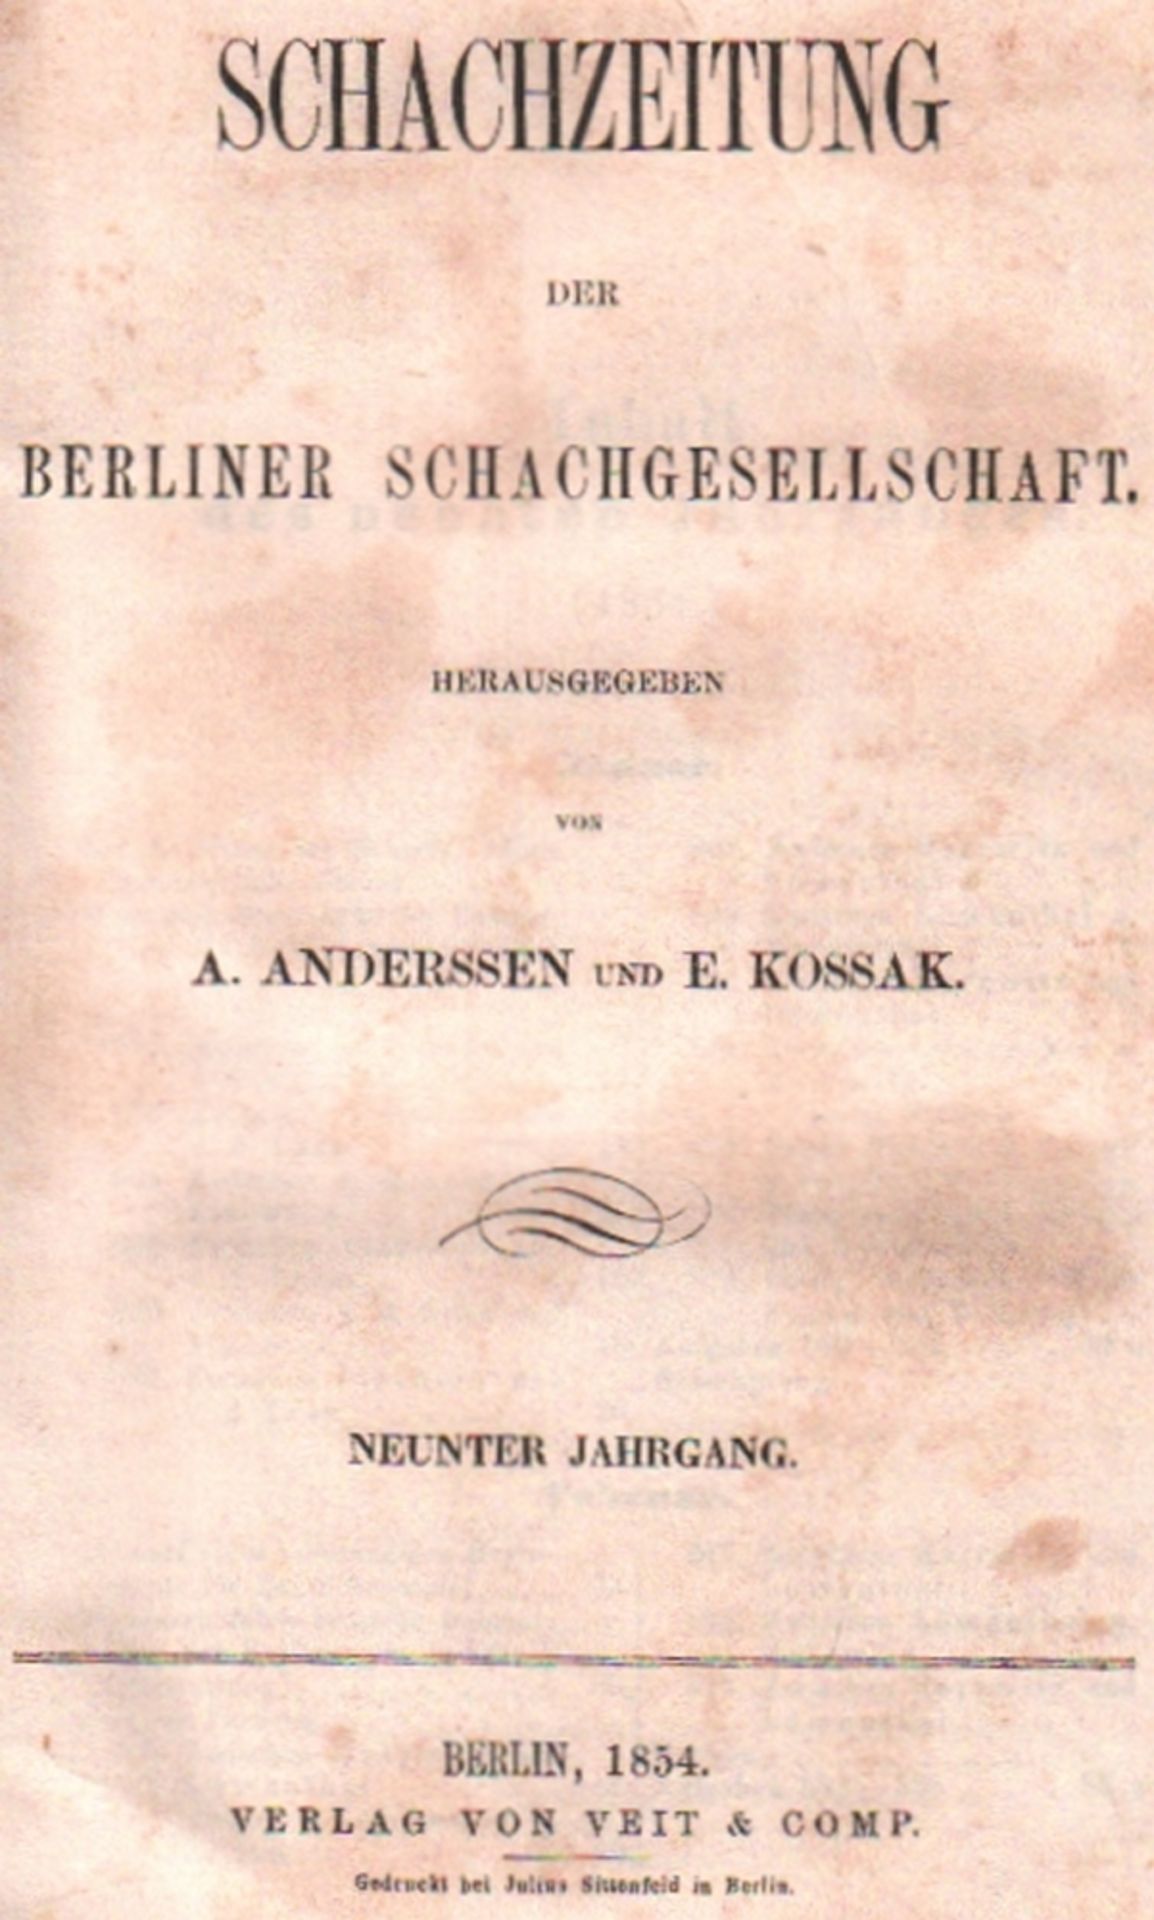 (Deutsche) Schachzeitung der Berliner Schachgesellschaft. Hrsg. von A. Anderssen und E. Kossak. 9.